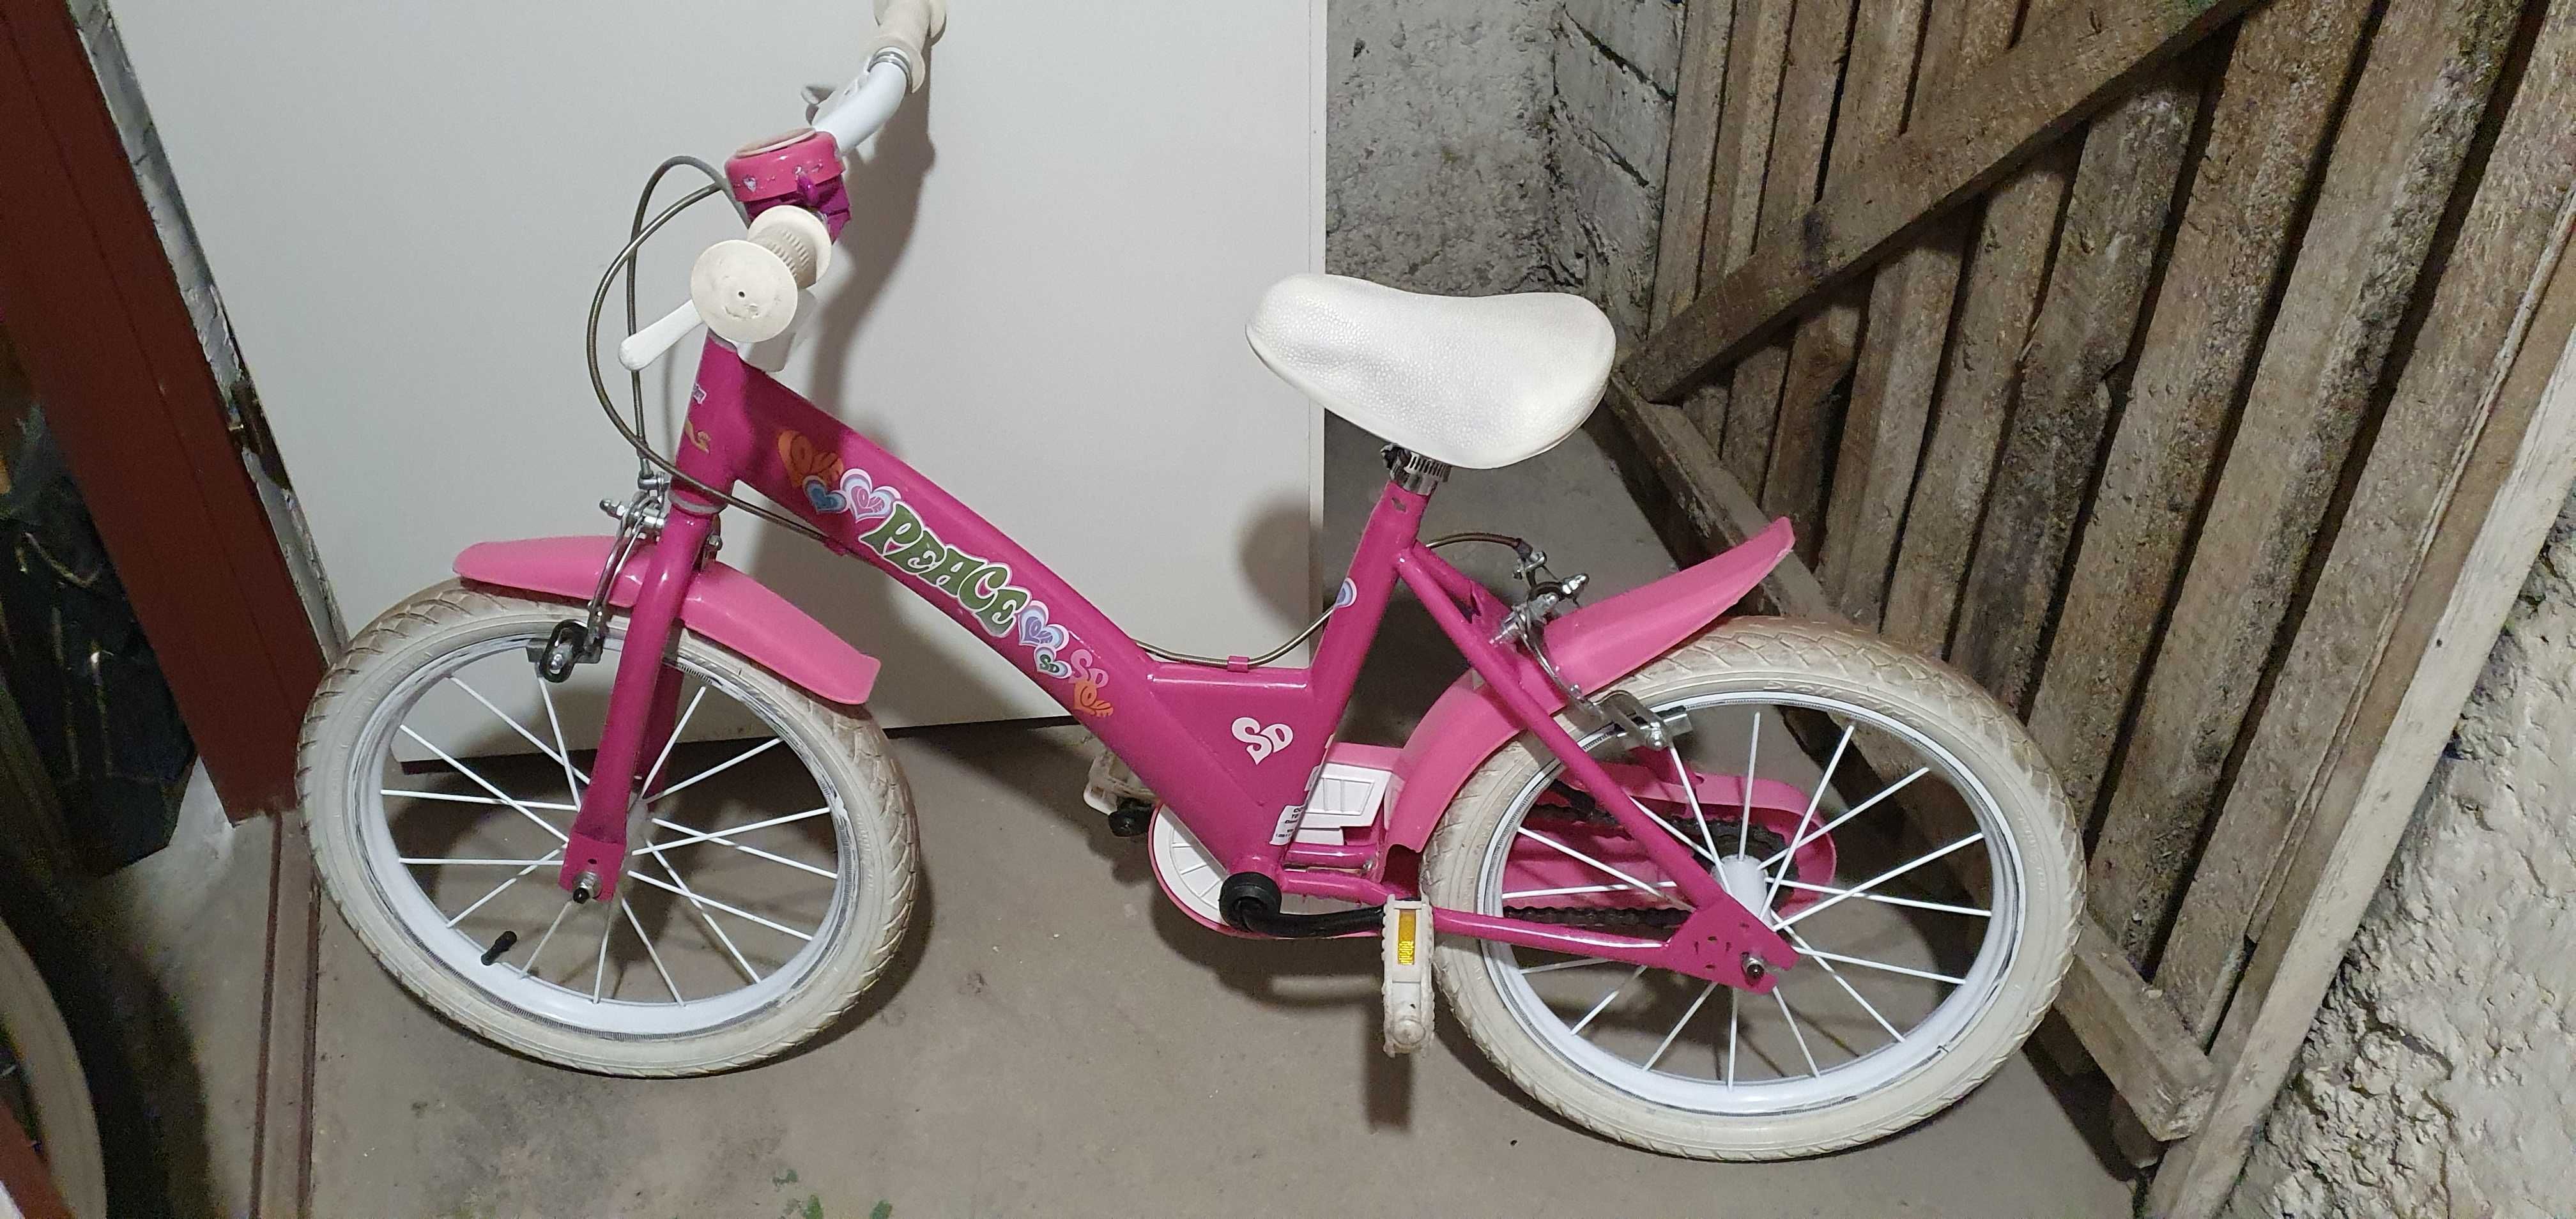 Rowerek dziewczęcy różowy na wiosnę lato dziecięcy rower